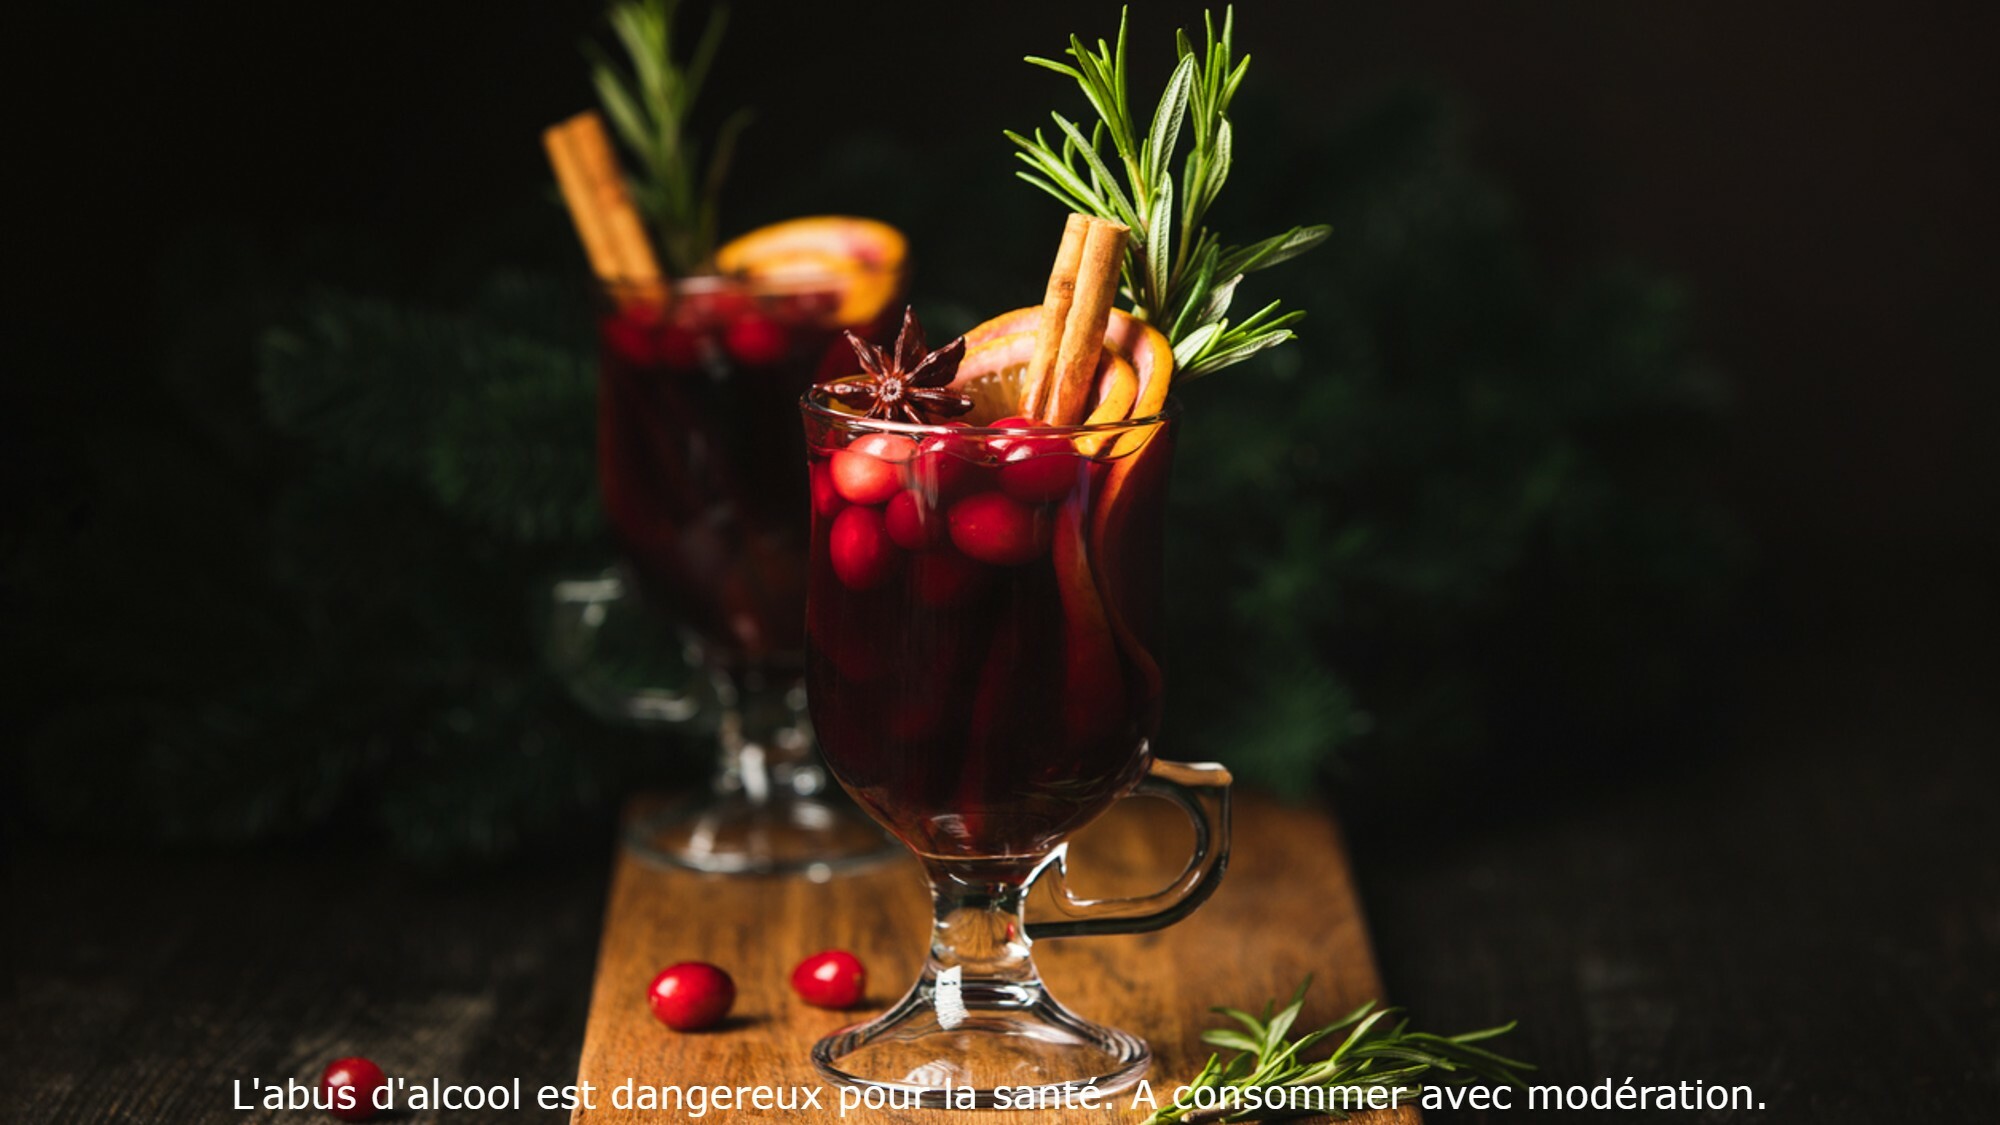 Recette de Noël : un vin chaud aux épices selon Cyril Lignac